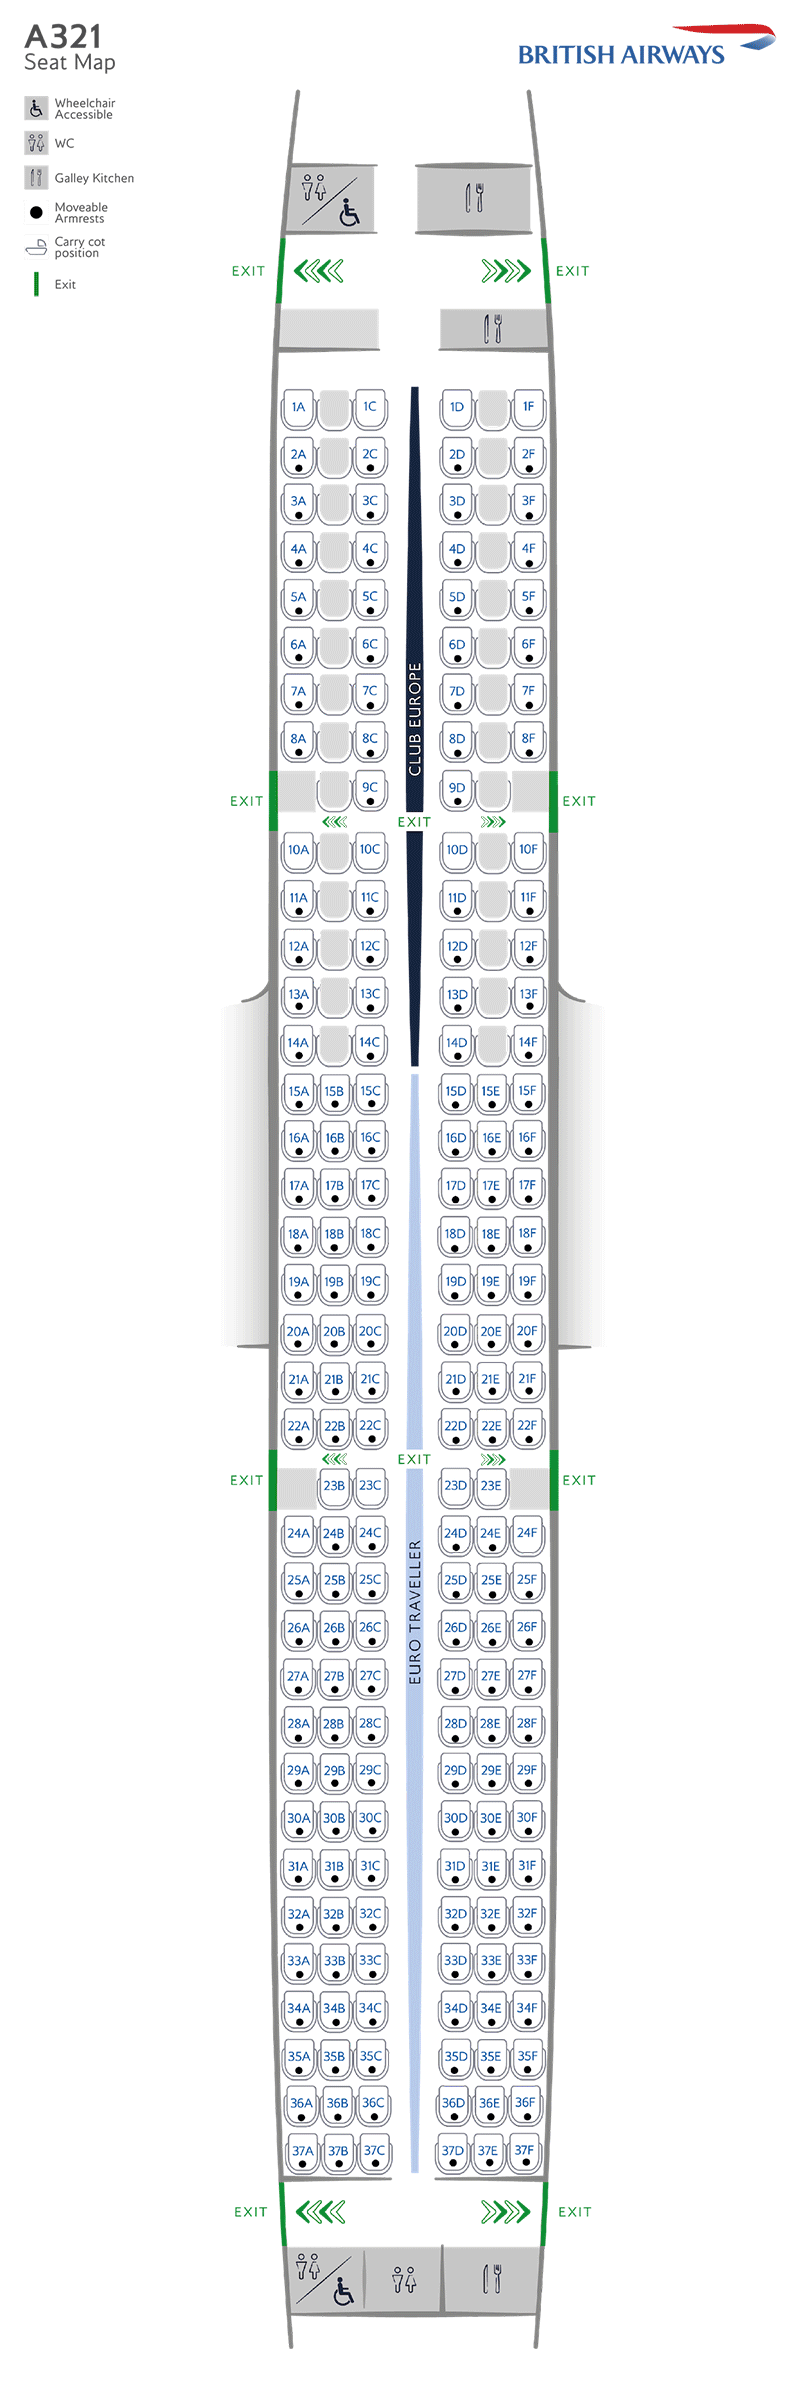 A321-200 seatmap